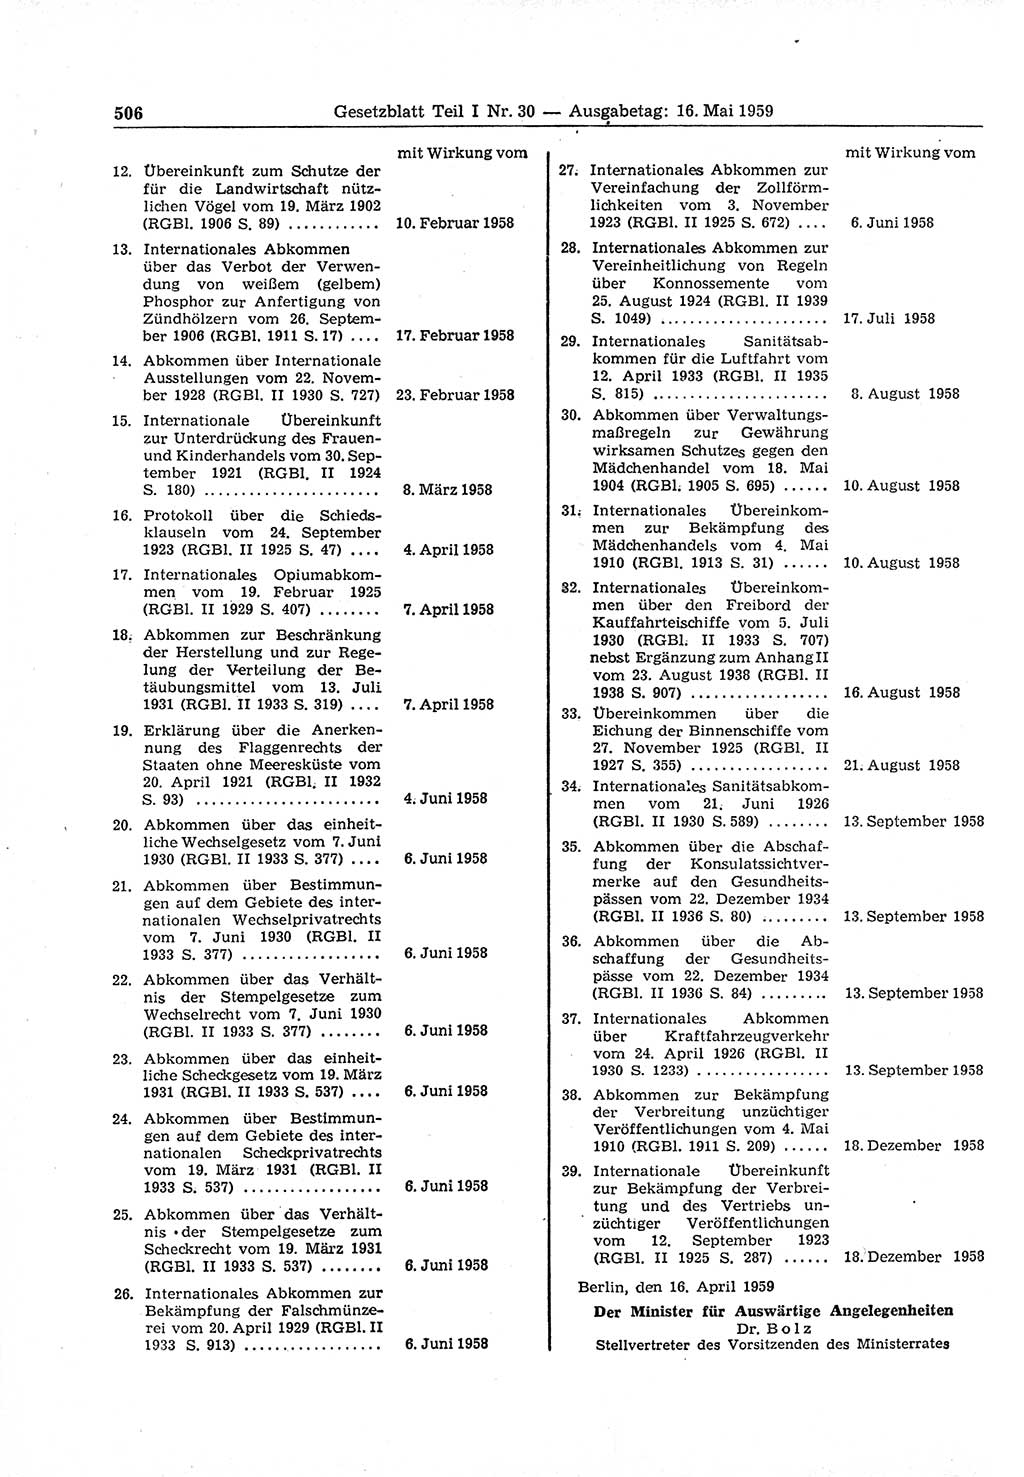 Gesetzblatt (GBl.) der Deutschen Demokratischen Republik (DDR) Teil Ⅰ 1959, Seite 506 (GBl. DDR Ⅰ 1959, S. 506)